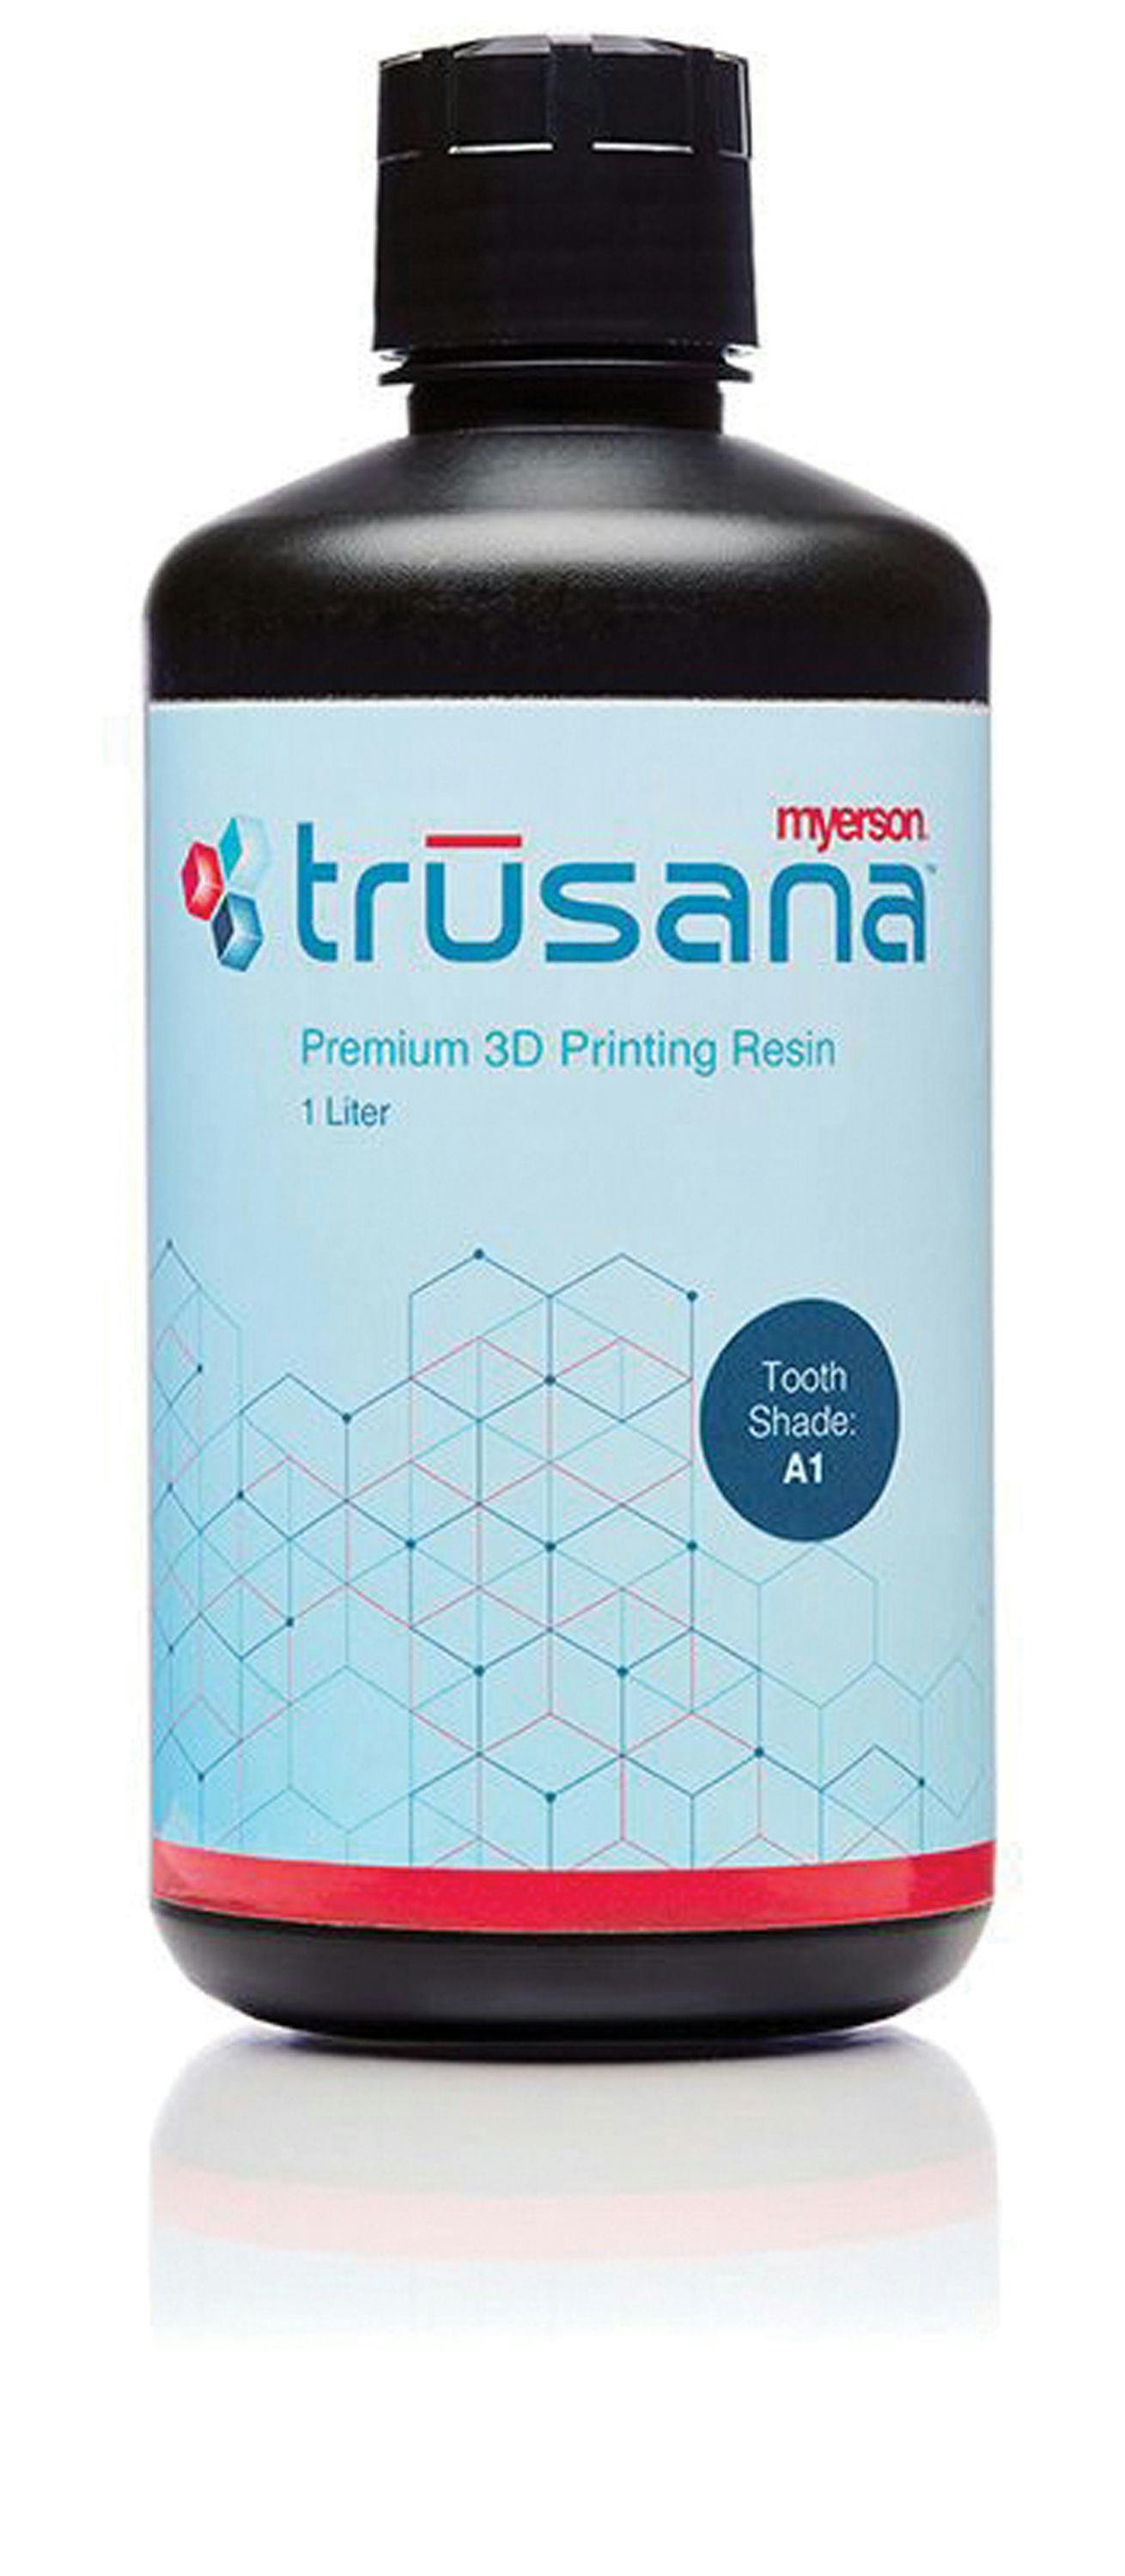 Trusana Product Image